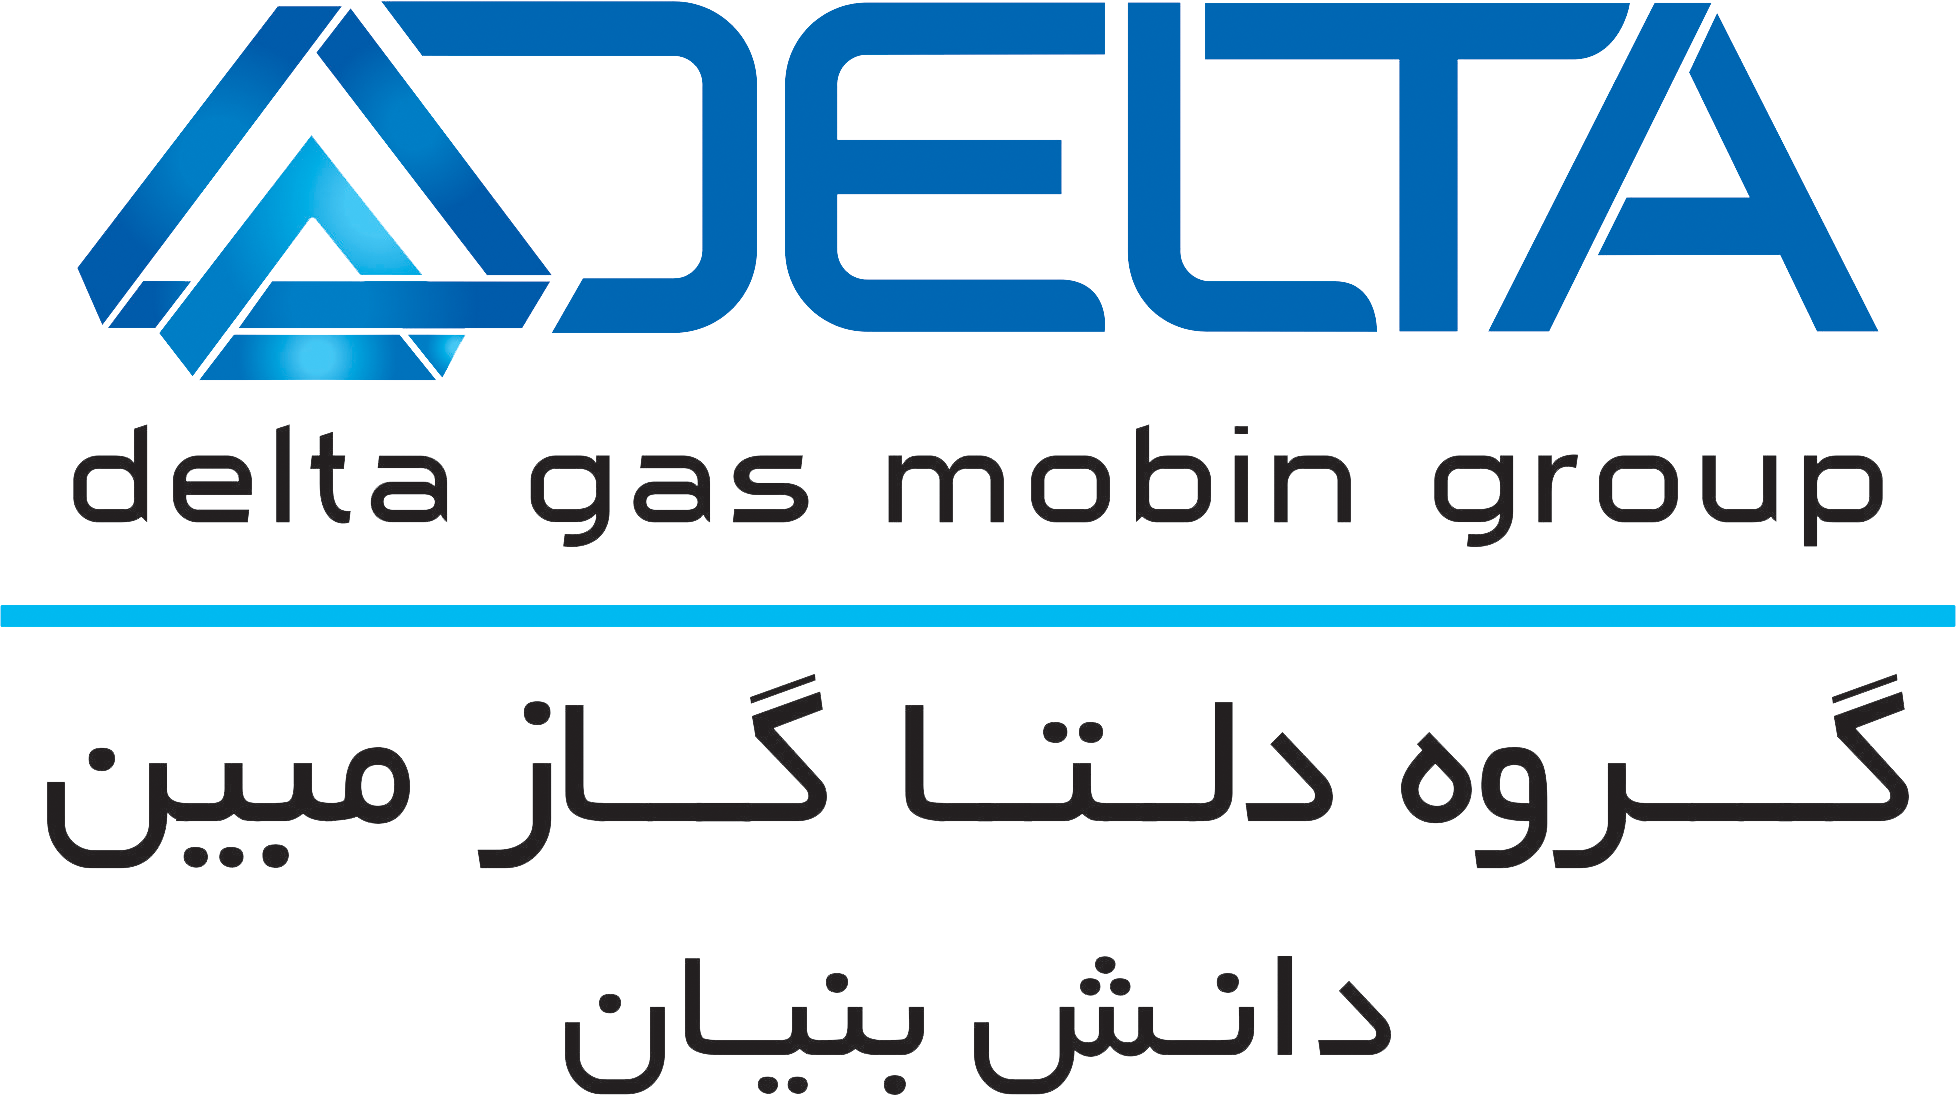 تکنسین برق | Electrical Technician - گروه دلتا گاز مبین | Delta Gas Mobin Group